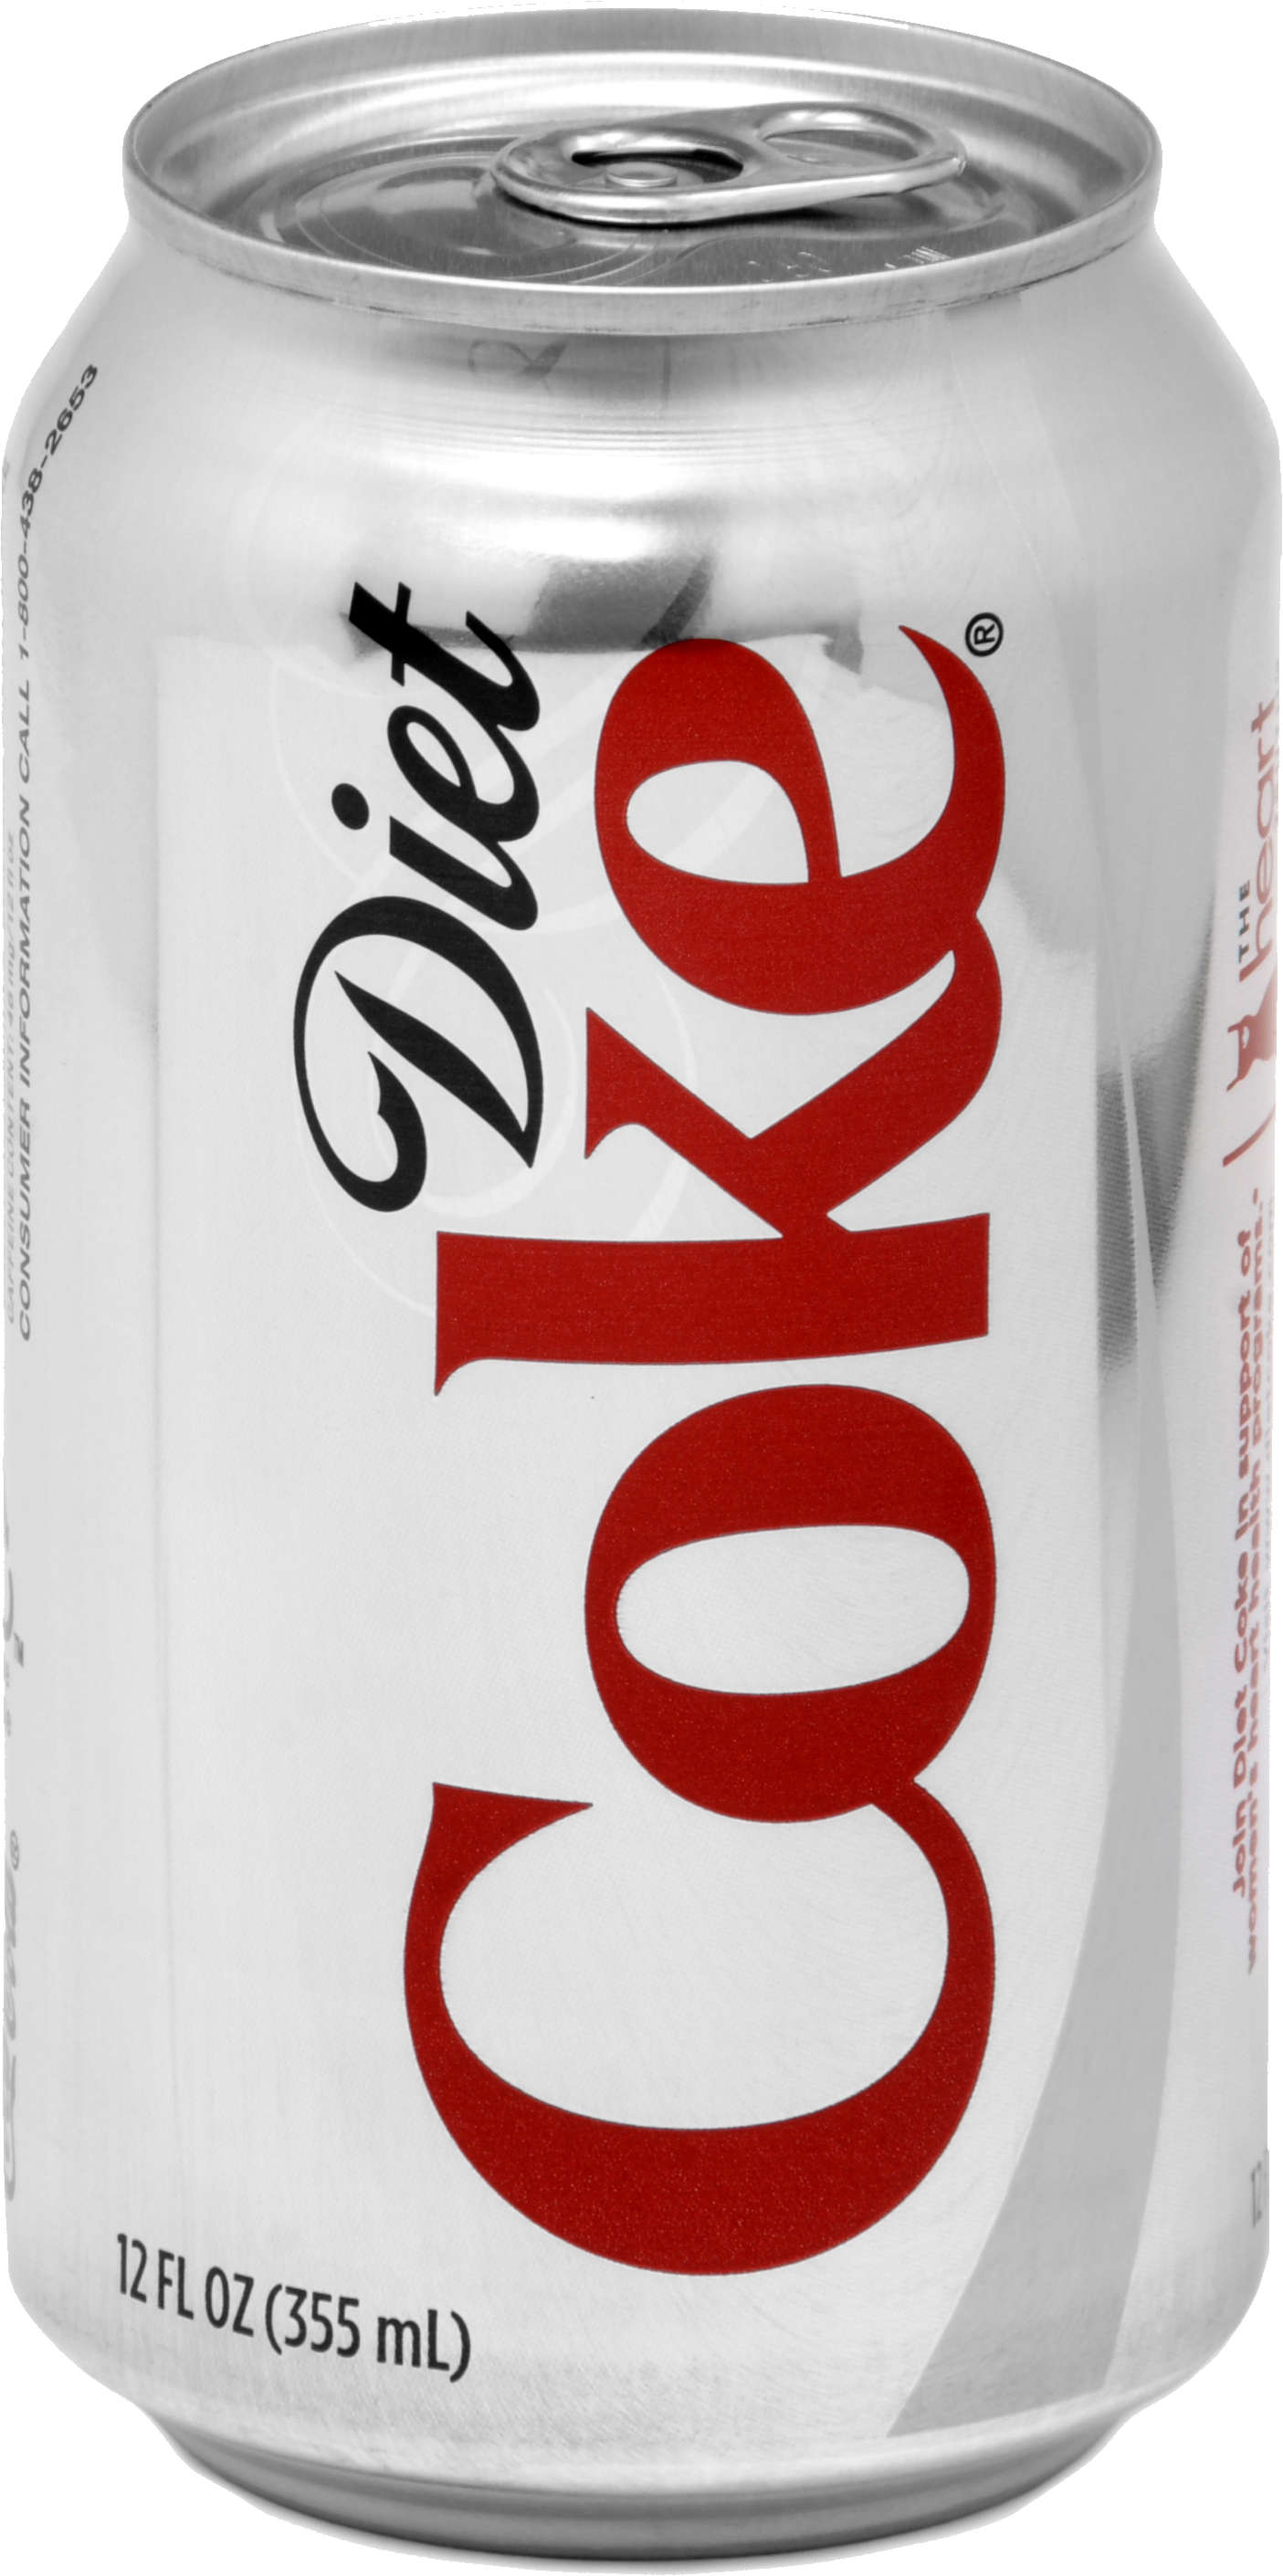 Coca-Cola kalengan putih